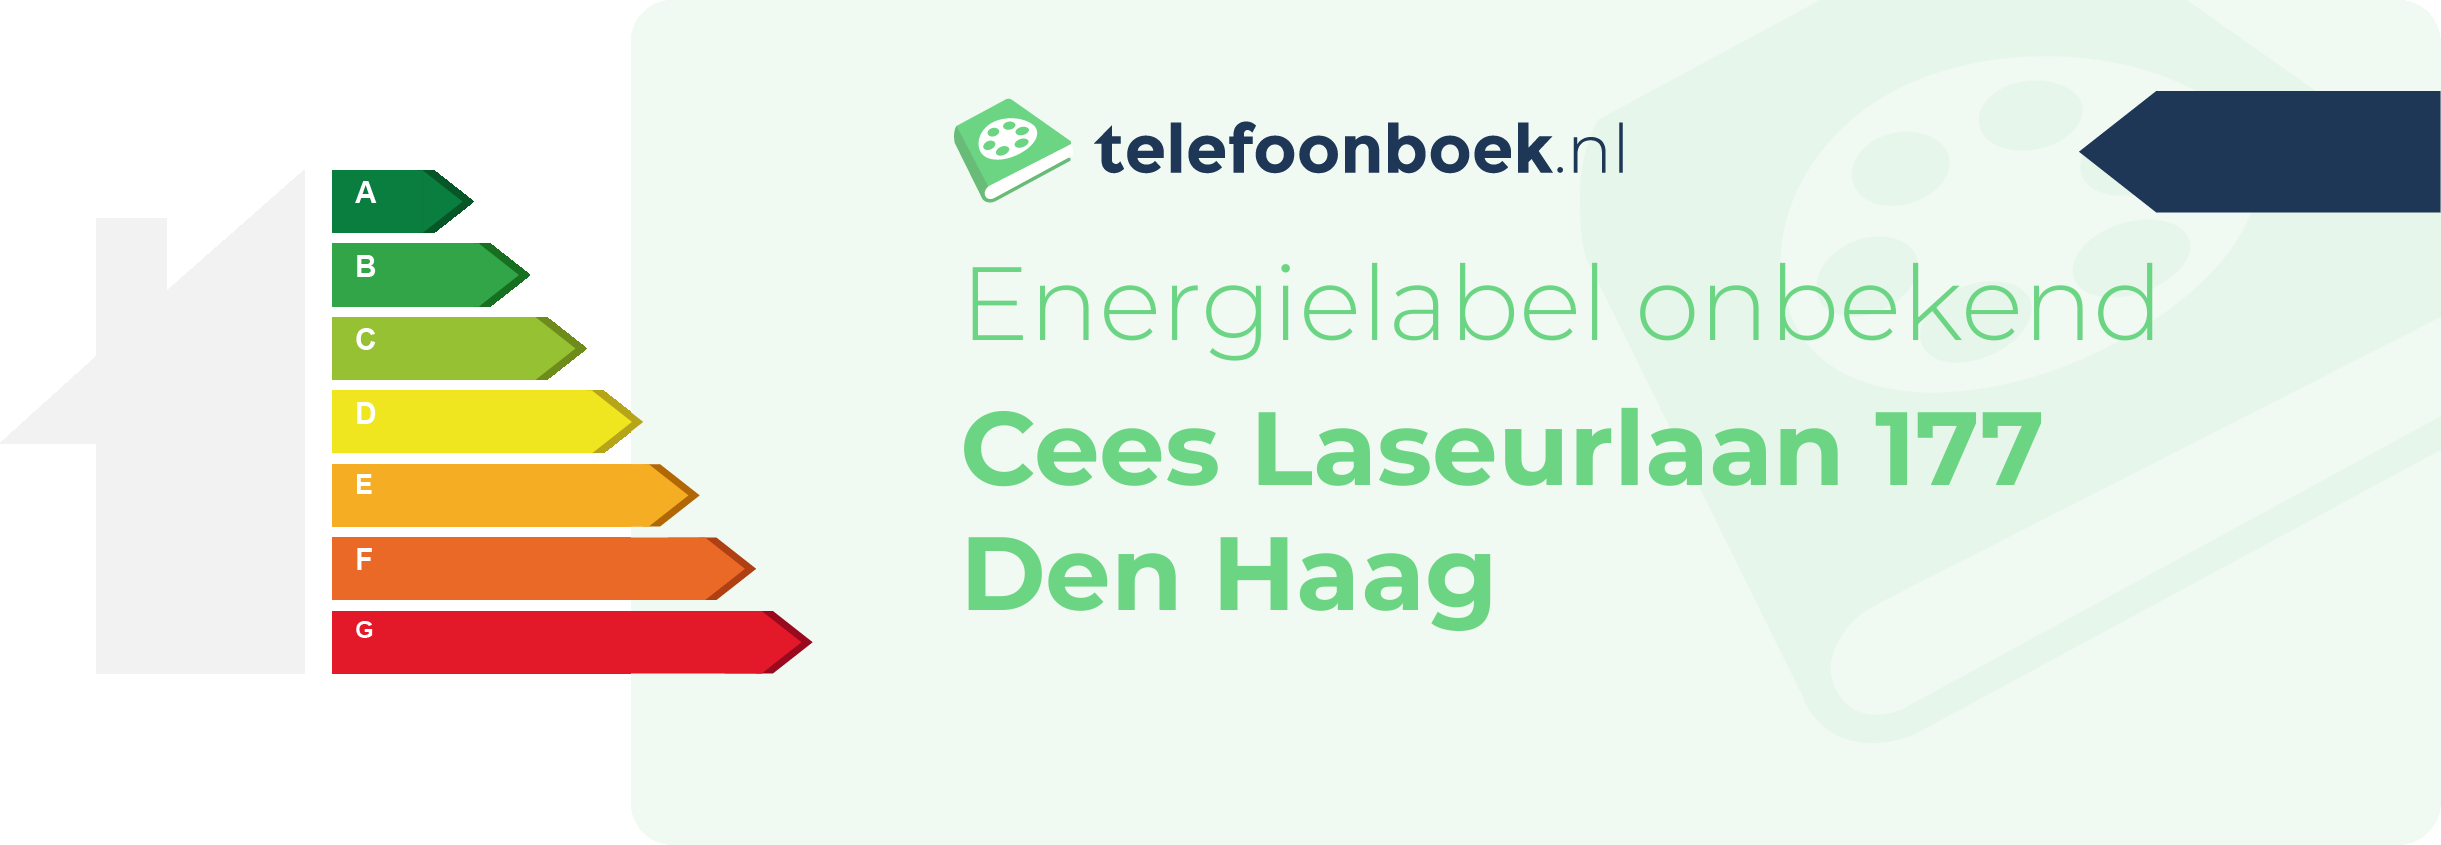 Energielabel Cees Laseurlaan 177 Den Haag